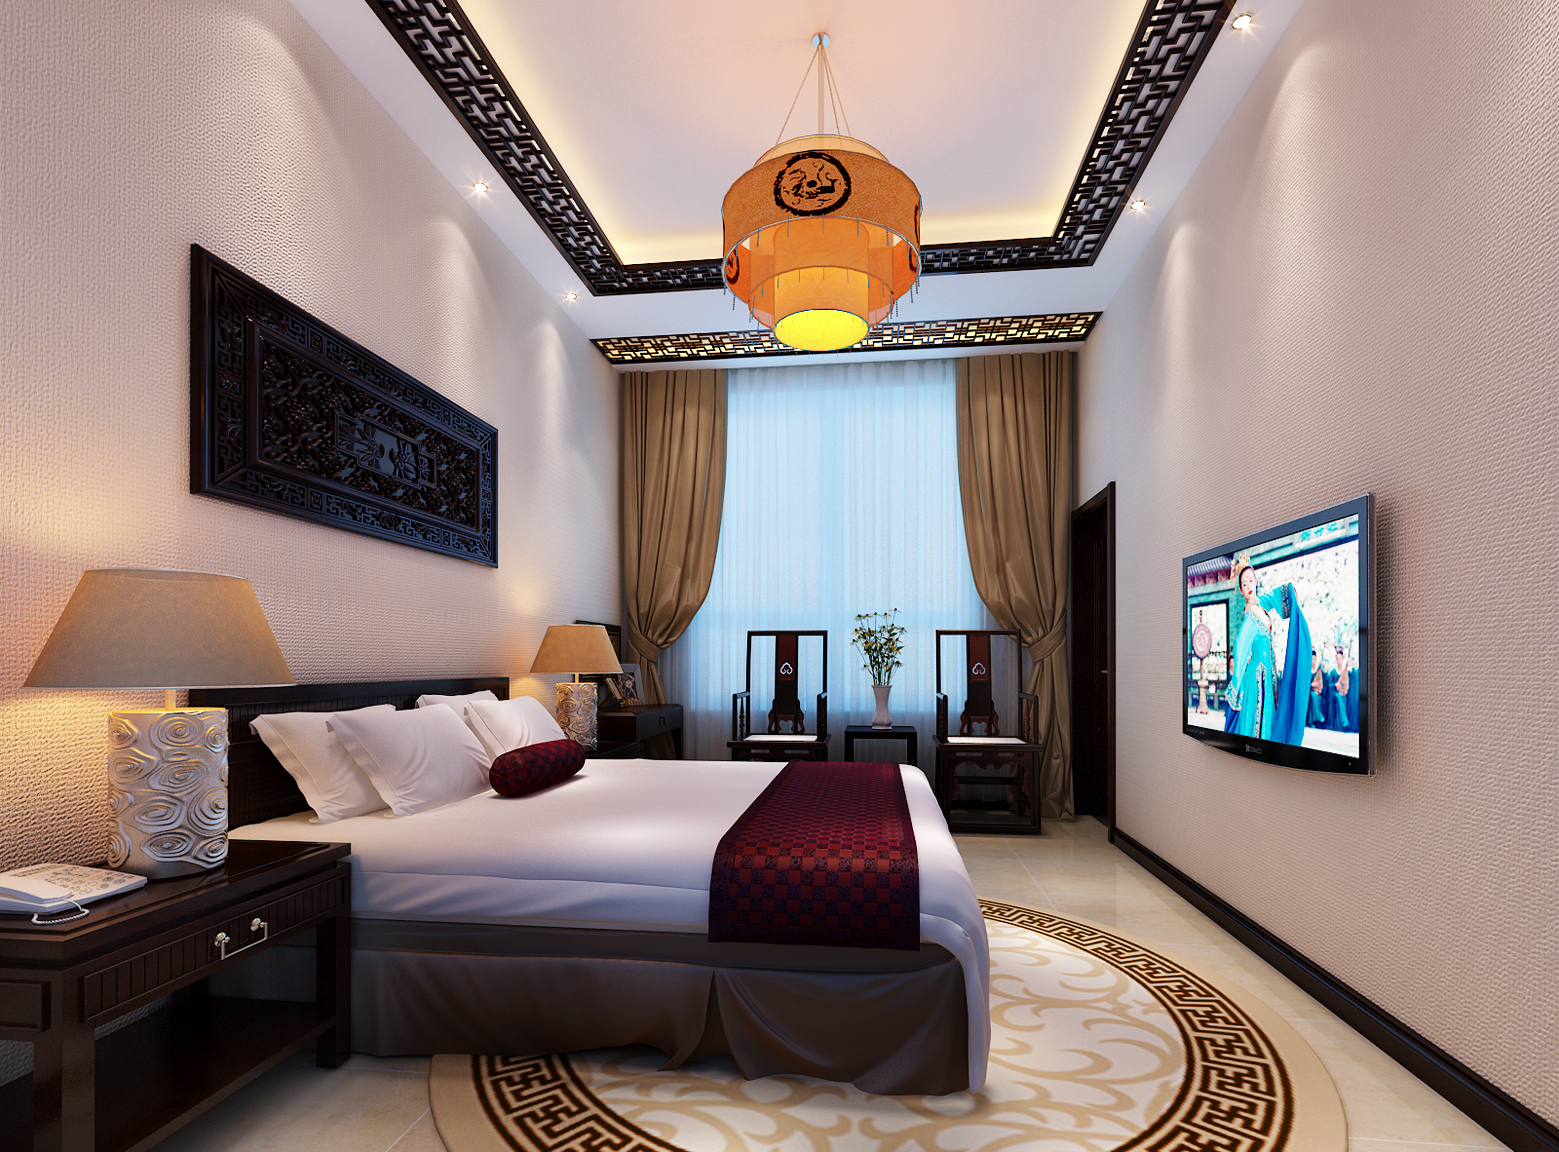 中式风格 休闲度假 装修效果图 实创装饰 卧室图片来自上海实创-装修设计效果图在185平宁静清幽中式装修设计的分享